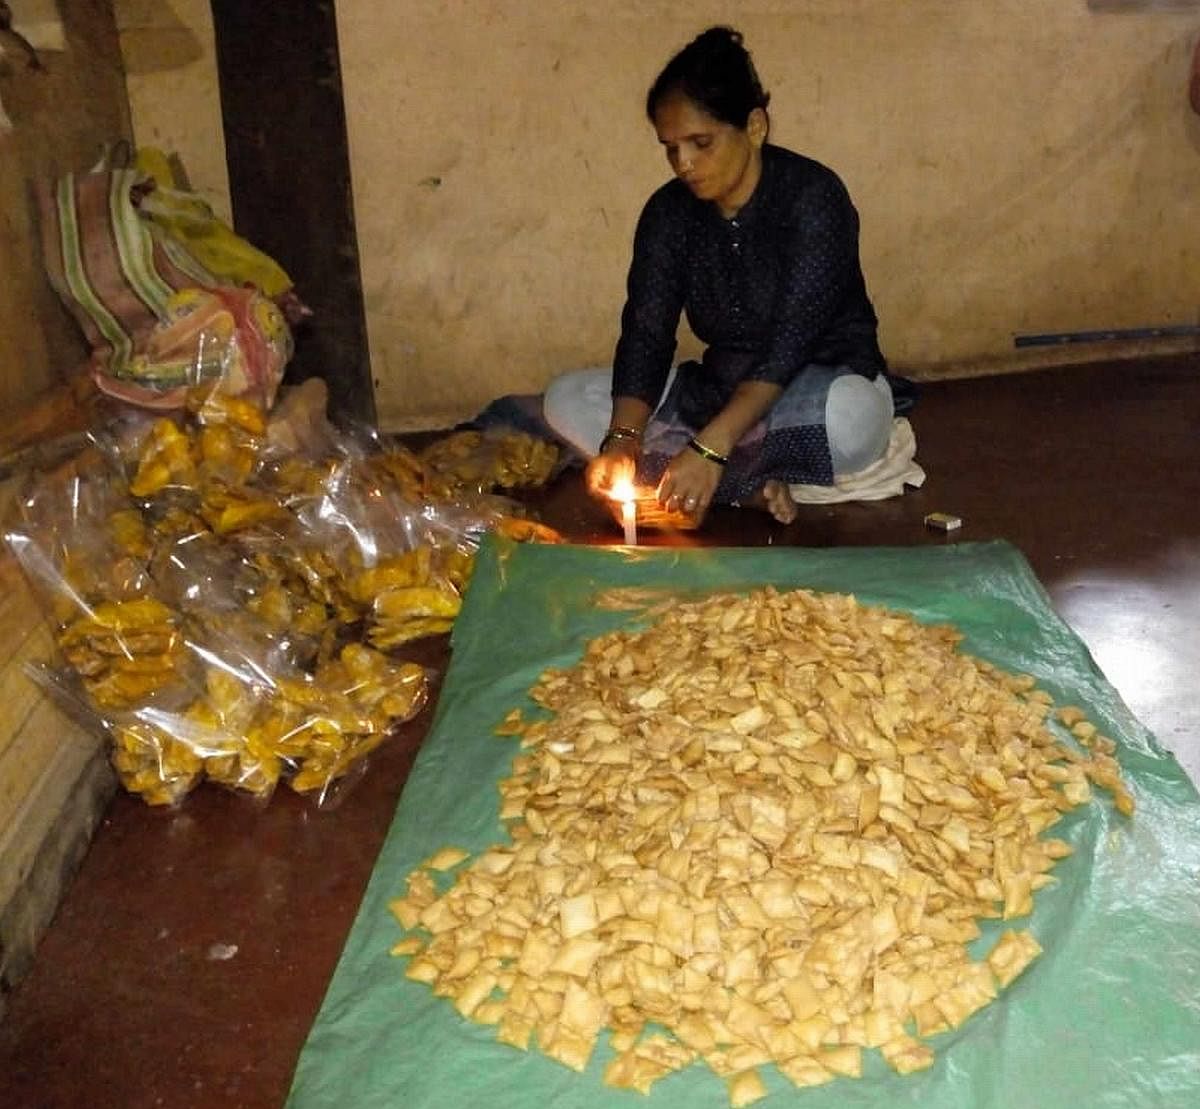 ಅಳ್ವೆಕೋಡಿಯ ಮಂಗಲಾ ವಾಳ್ಕೆ ಅವರು ಸಿಹಿ ತಿಂಡಿಗಳನ್ನು ಪ್ಯಾಕೆಟ್‌ಗಳನ್ನಾಗಿ ಸಿದ್ಧ ಪಡಿಸುತ್ತಿರುವುದು